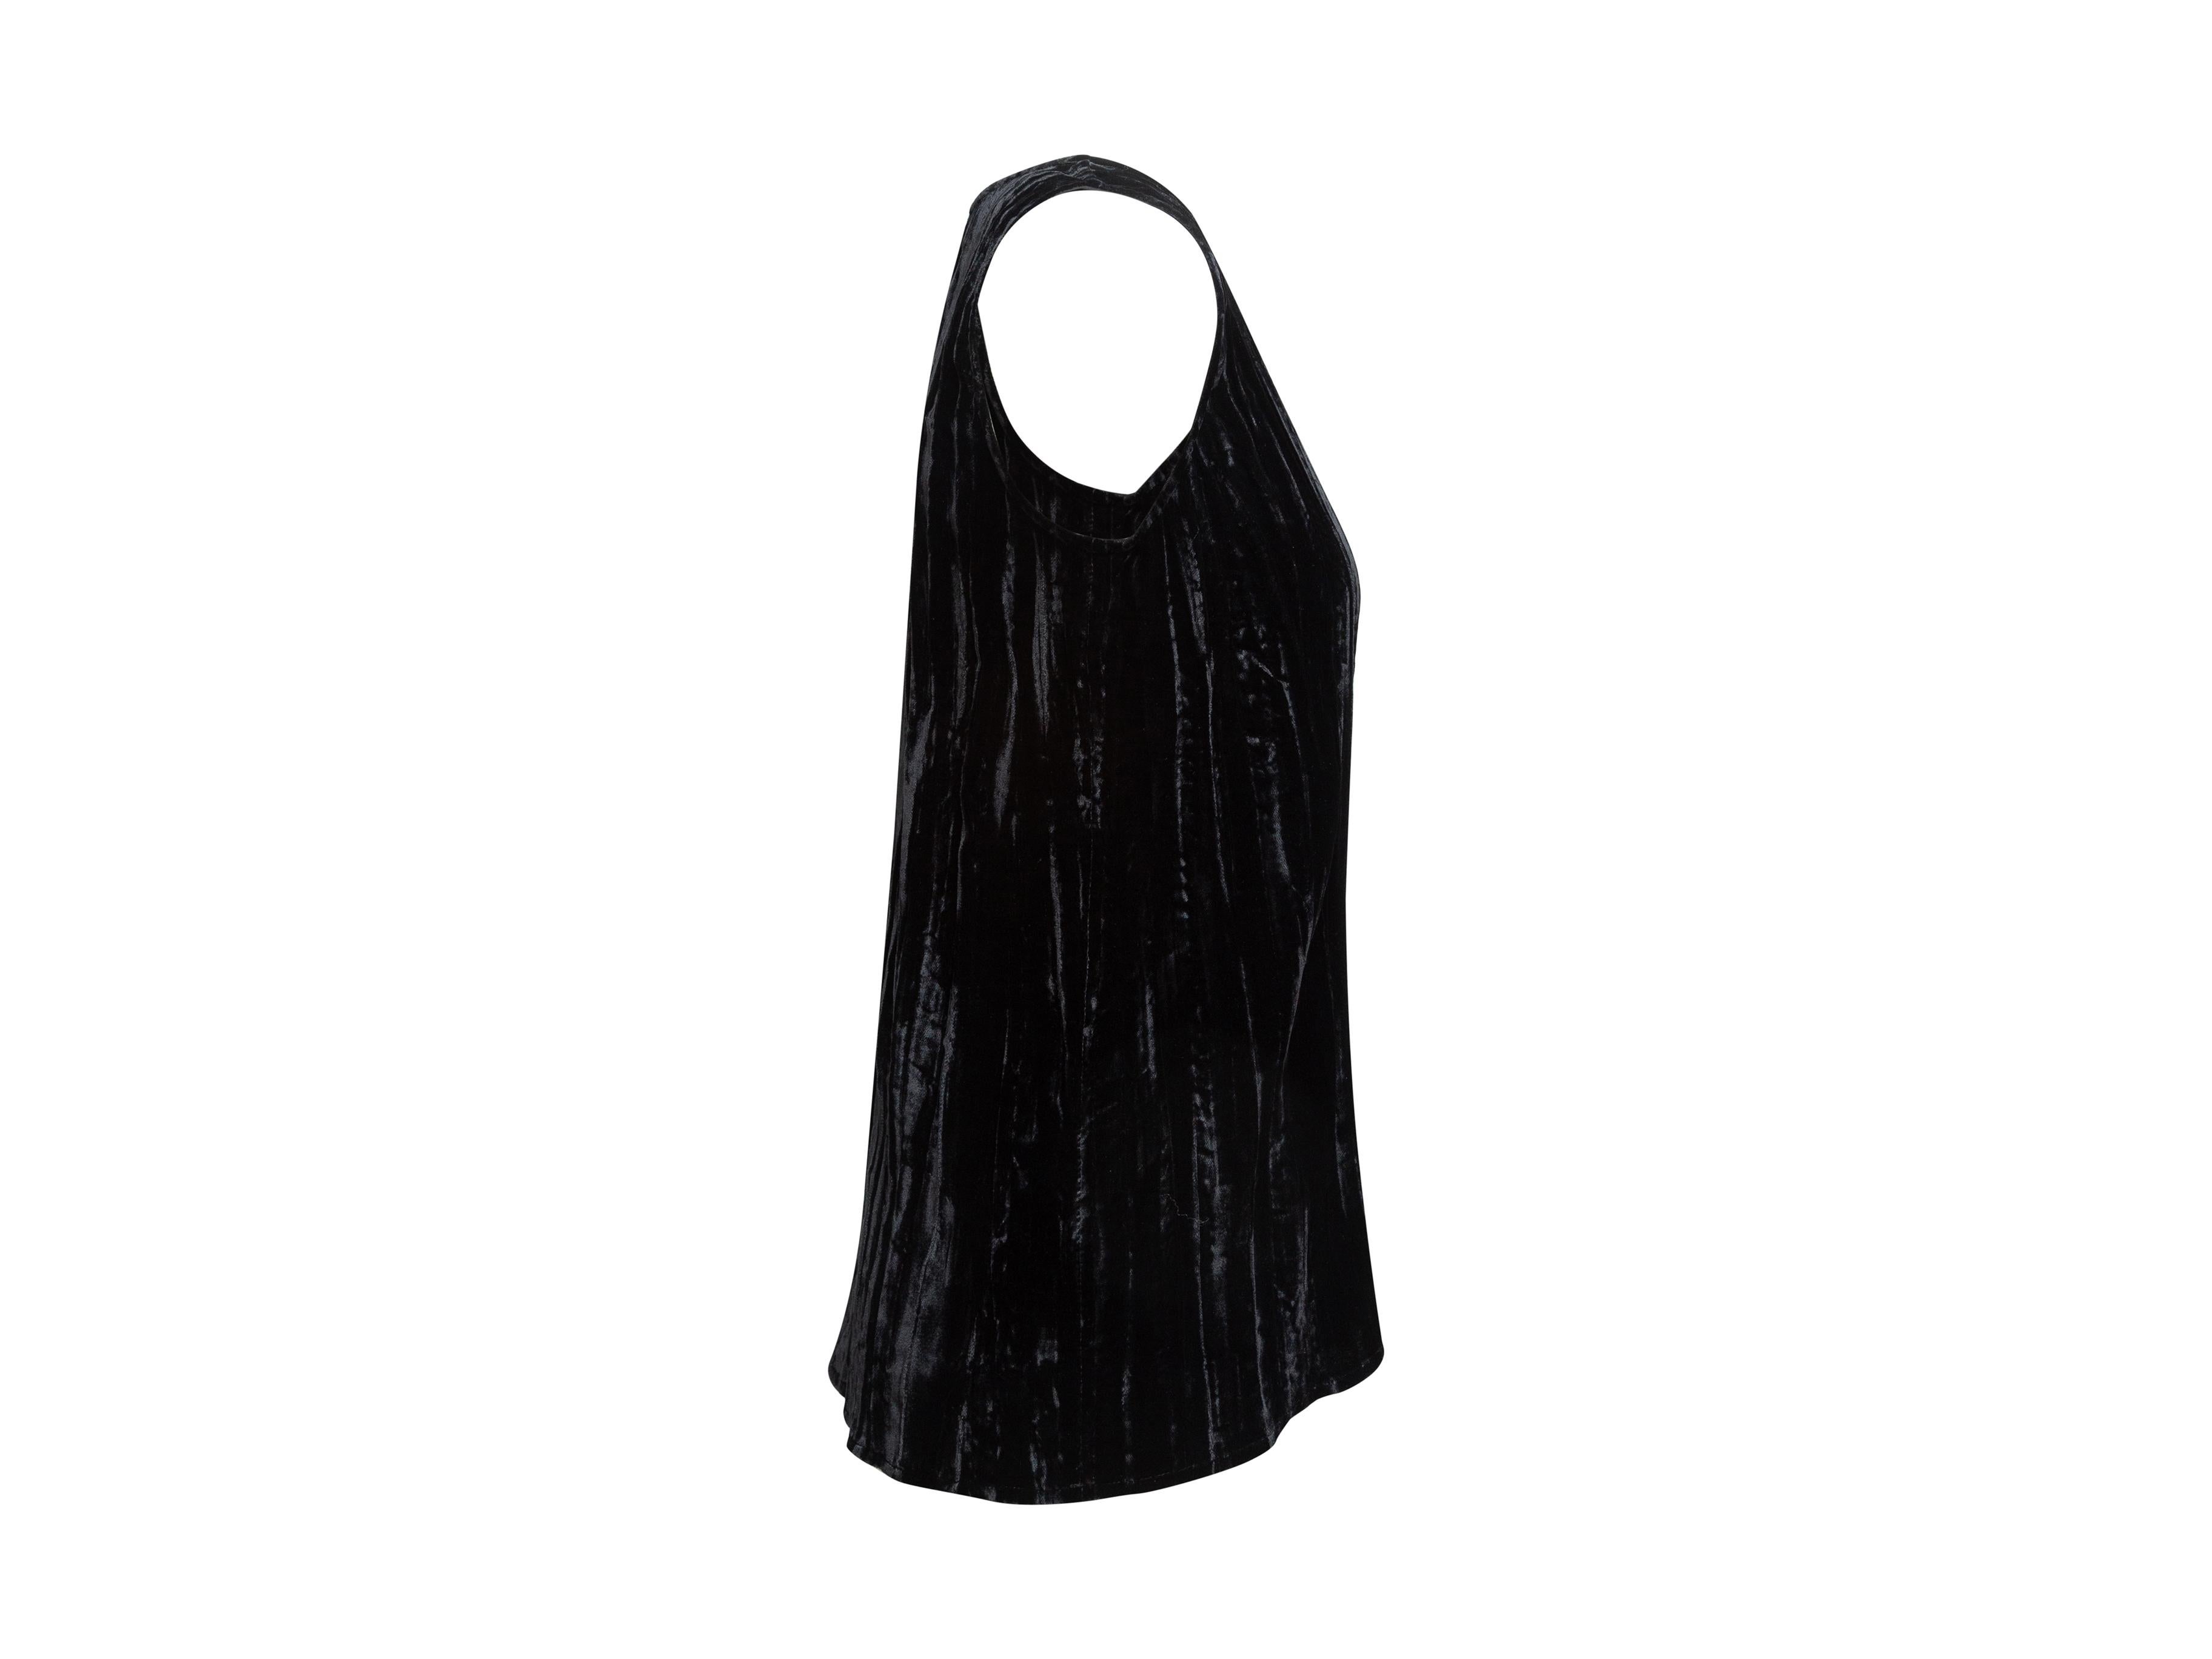 Product details: Vintage black velvet sleeveless top by Yves Saint Laurent. Crew neck. Designer size 38. 26